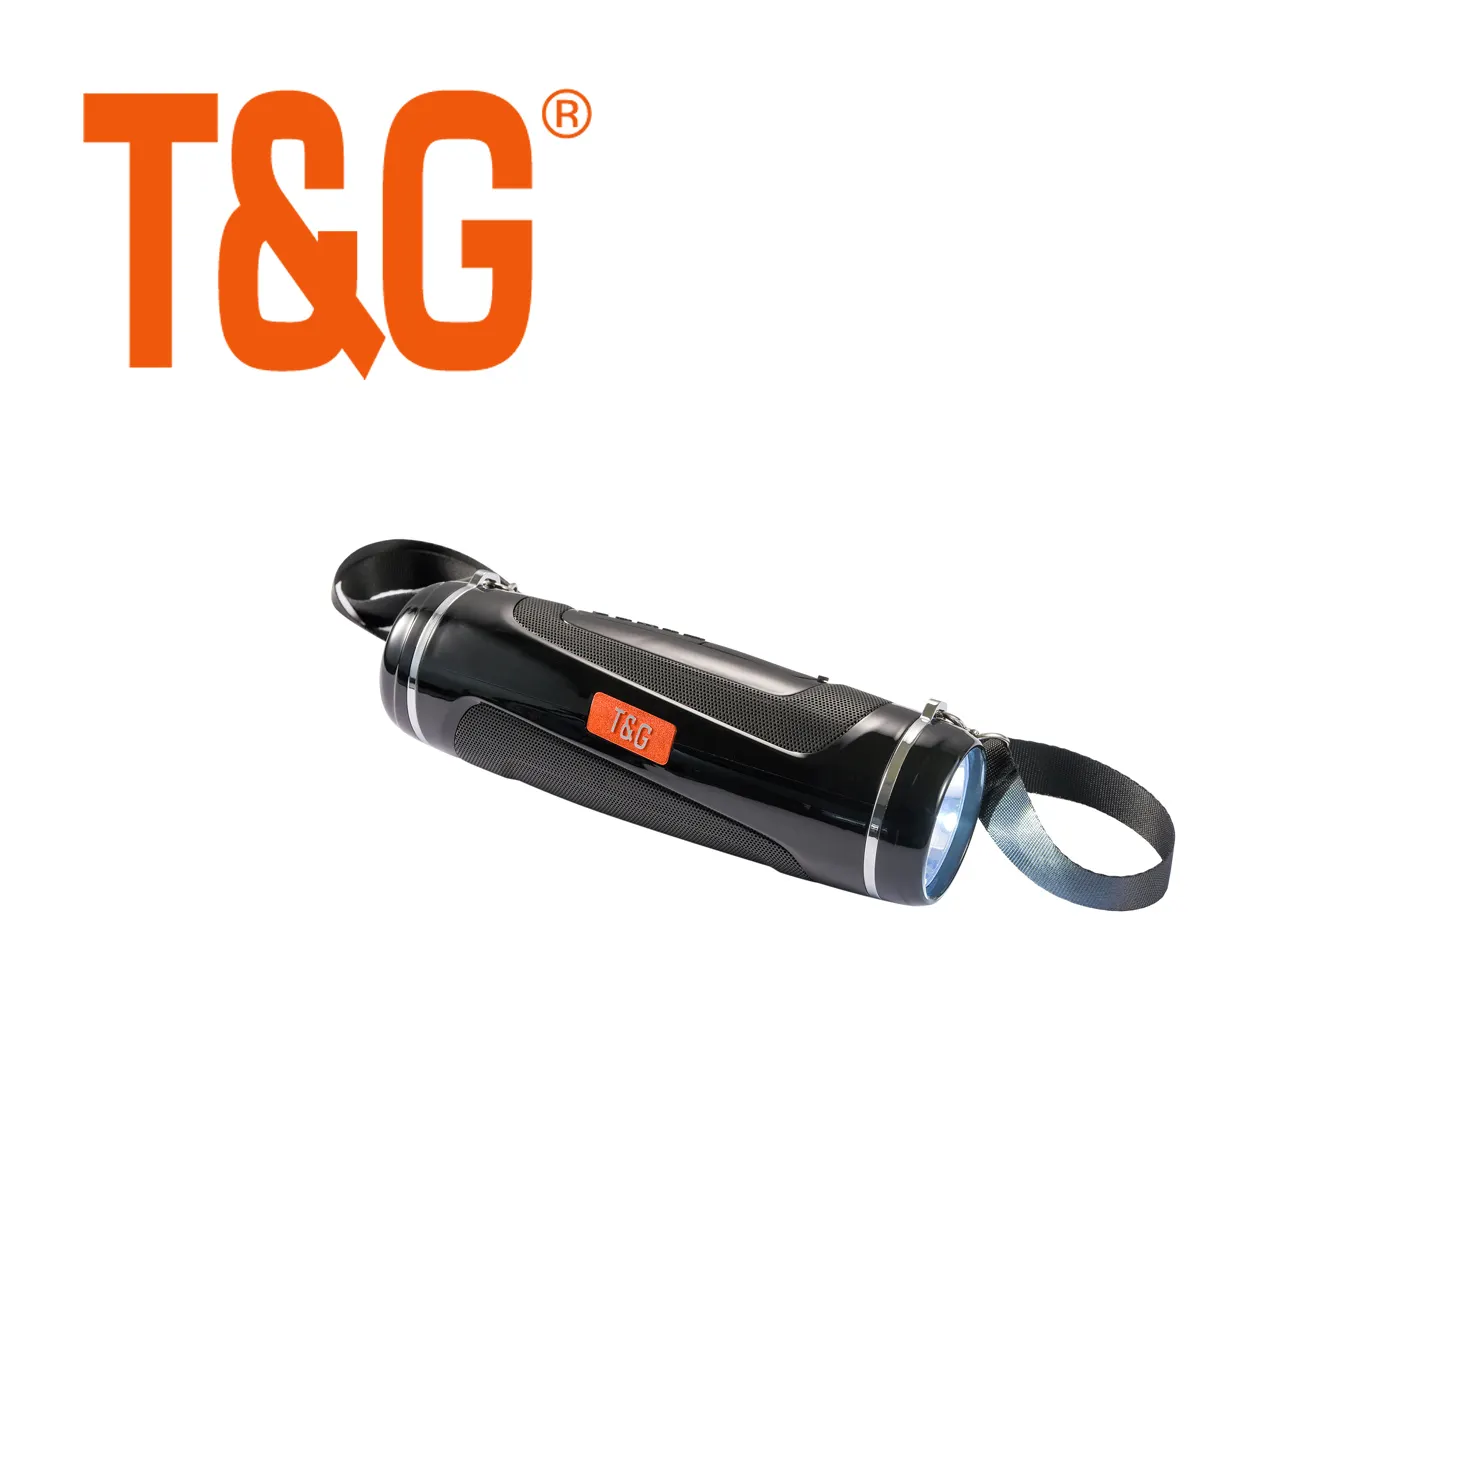 Tg601 caixa de som portátil sem fio, bluetooth 5.0, com luz led, lanterna, uso externo, caixa de som, tf cartão fm